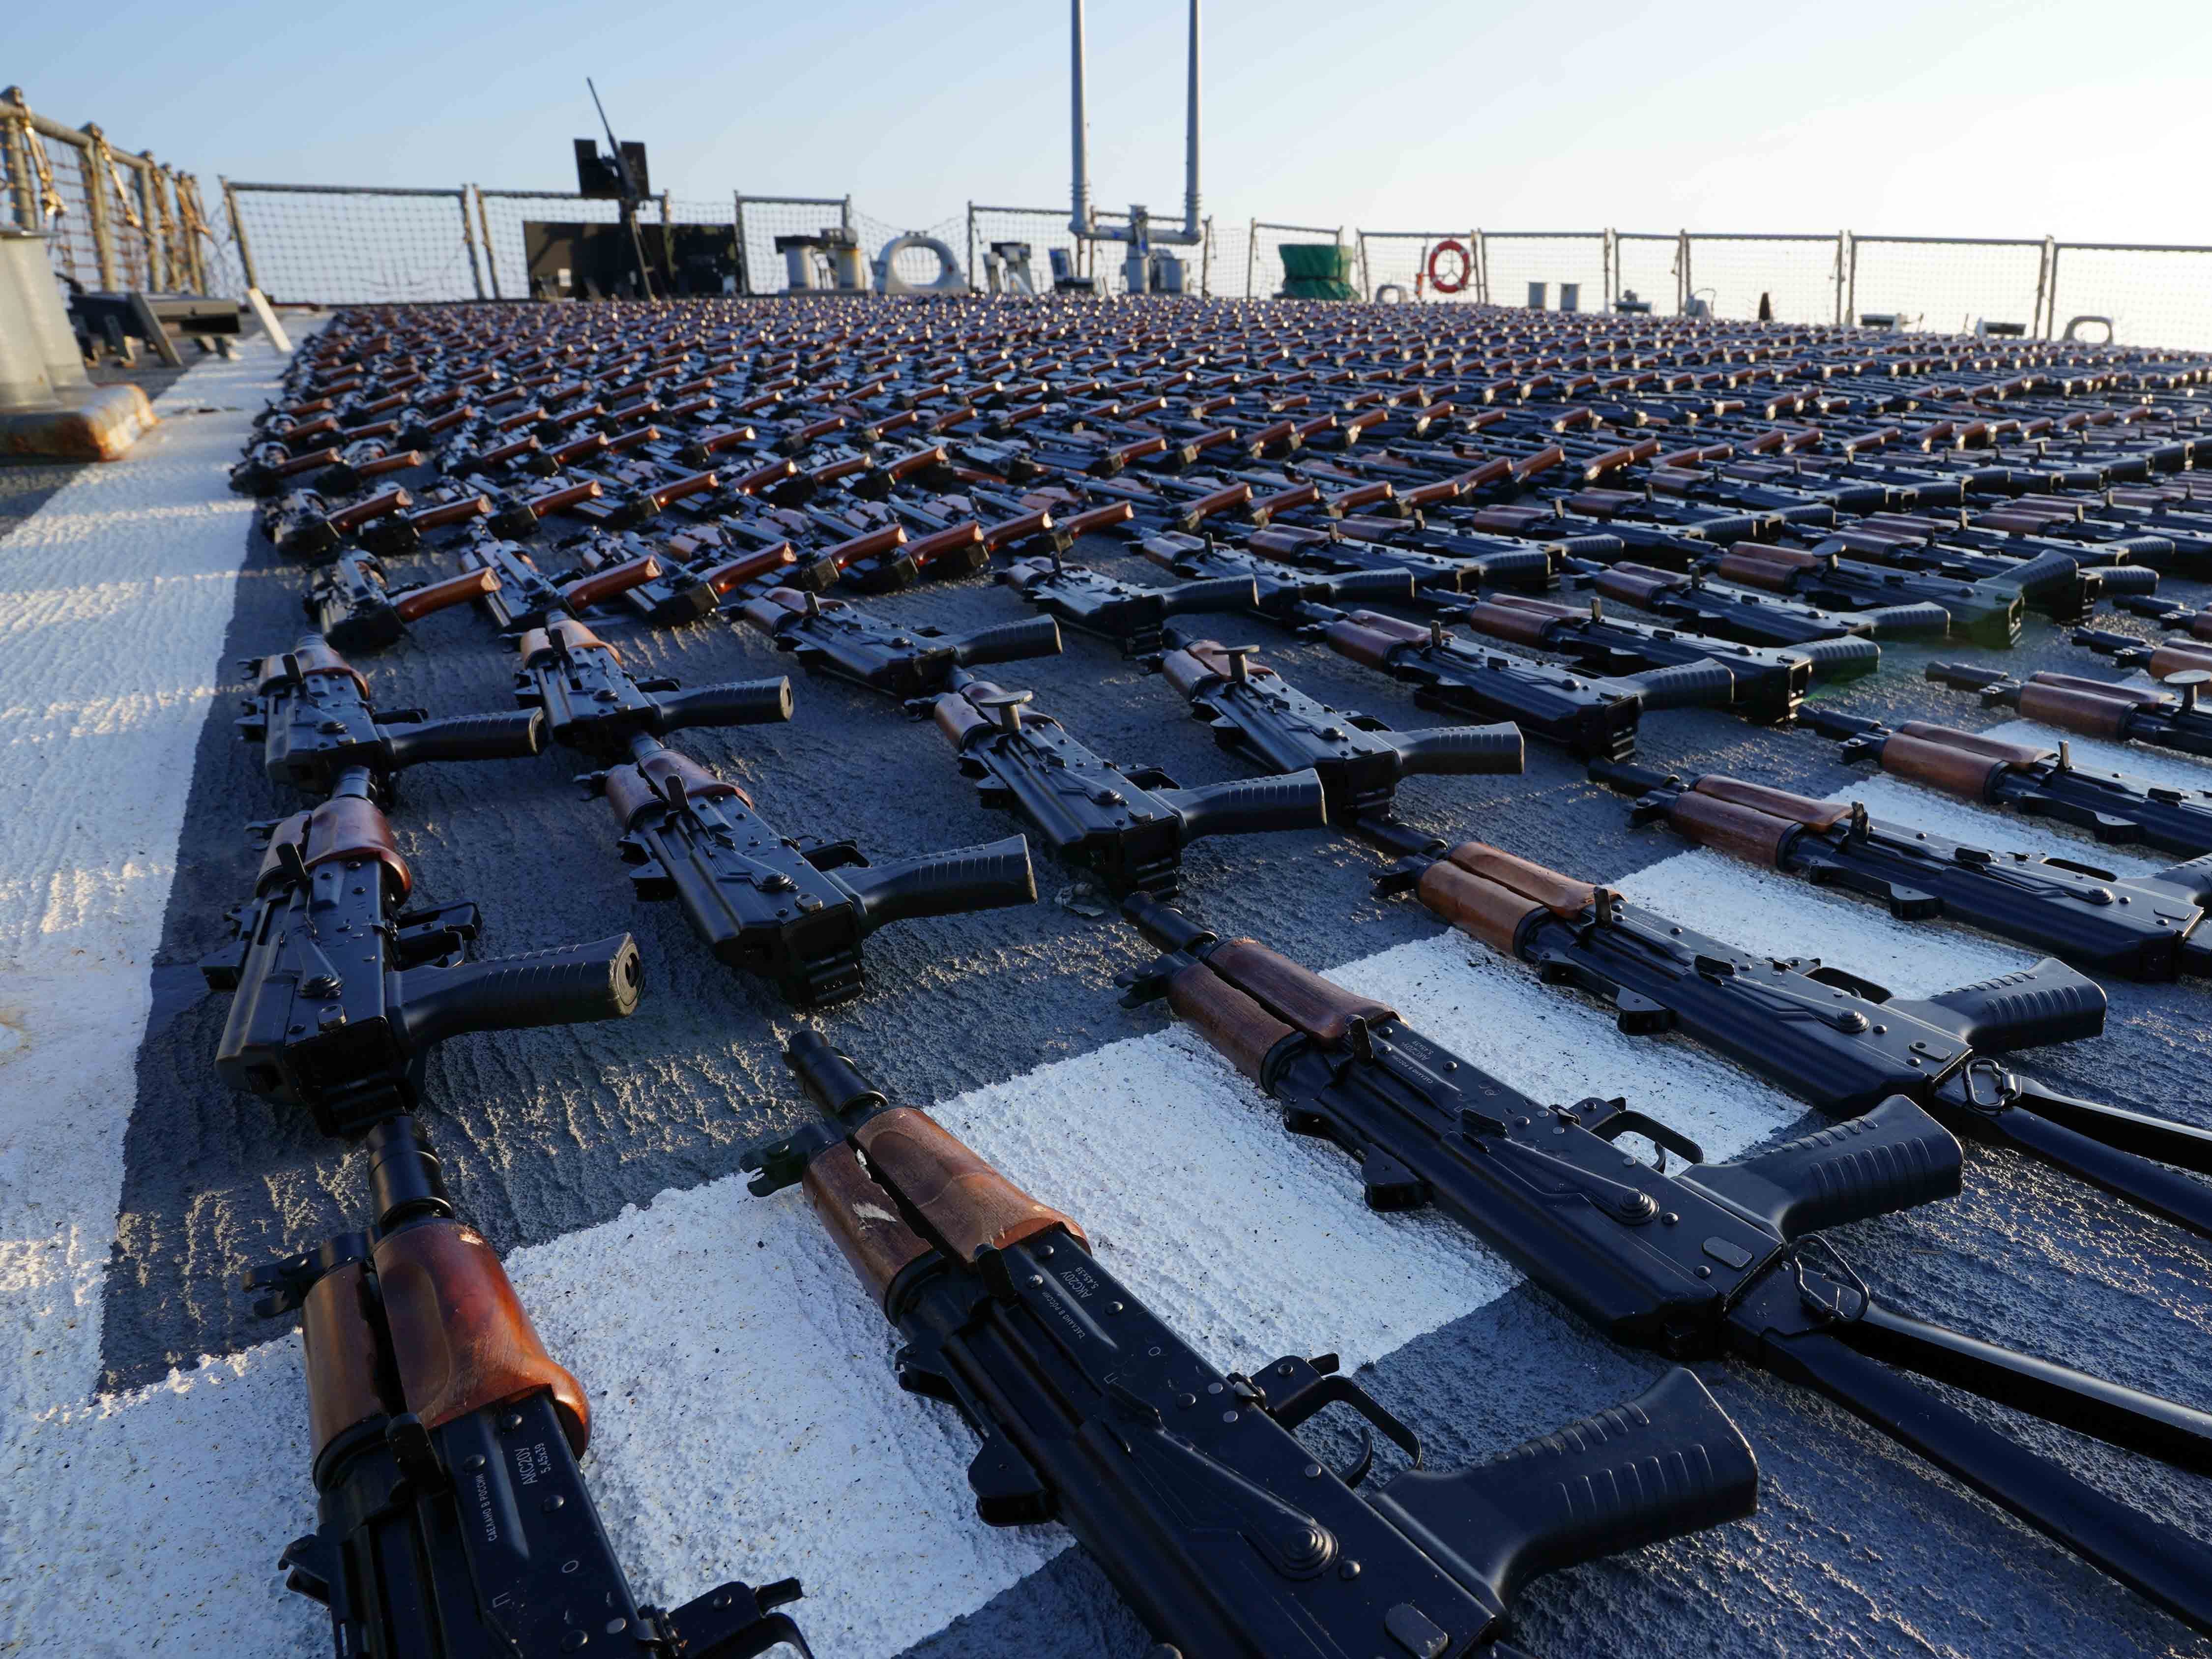 Dutzende von Gewehren, die auf dem Deck des Bootes ausgelegt sind